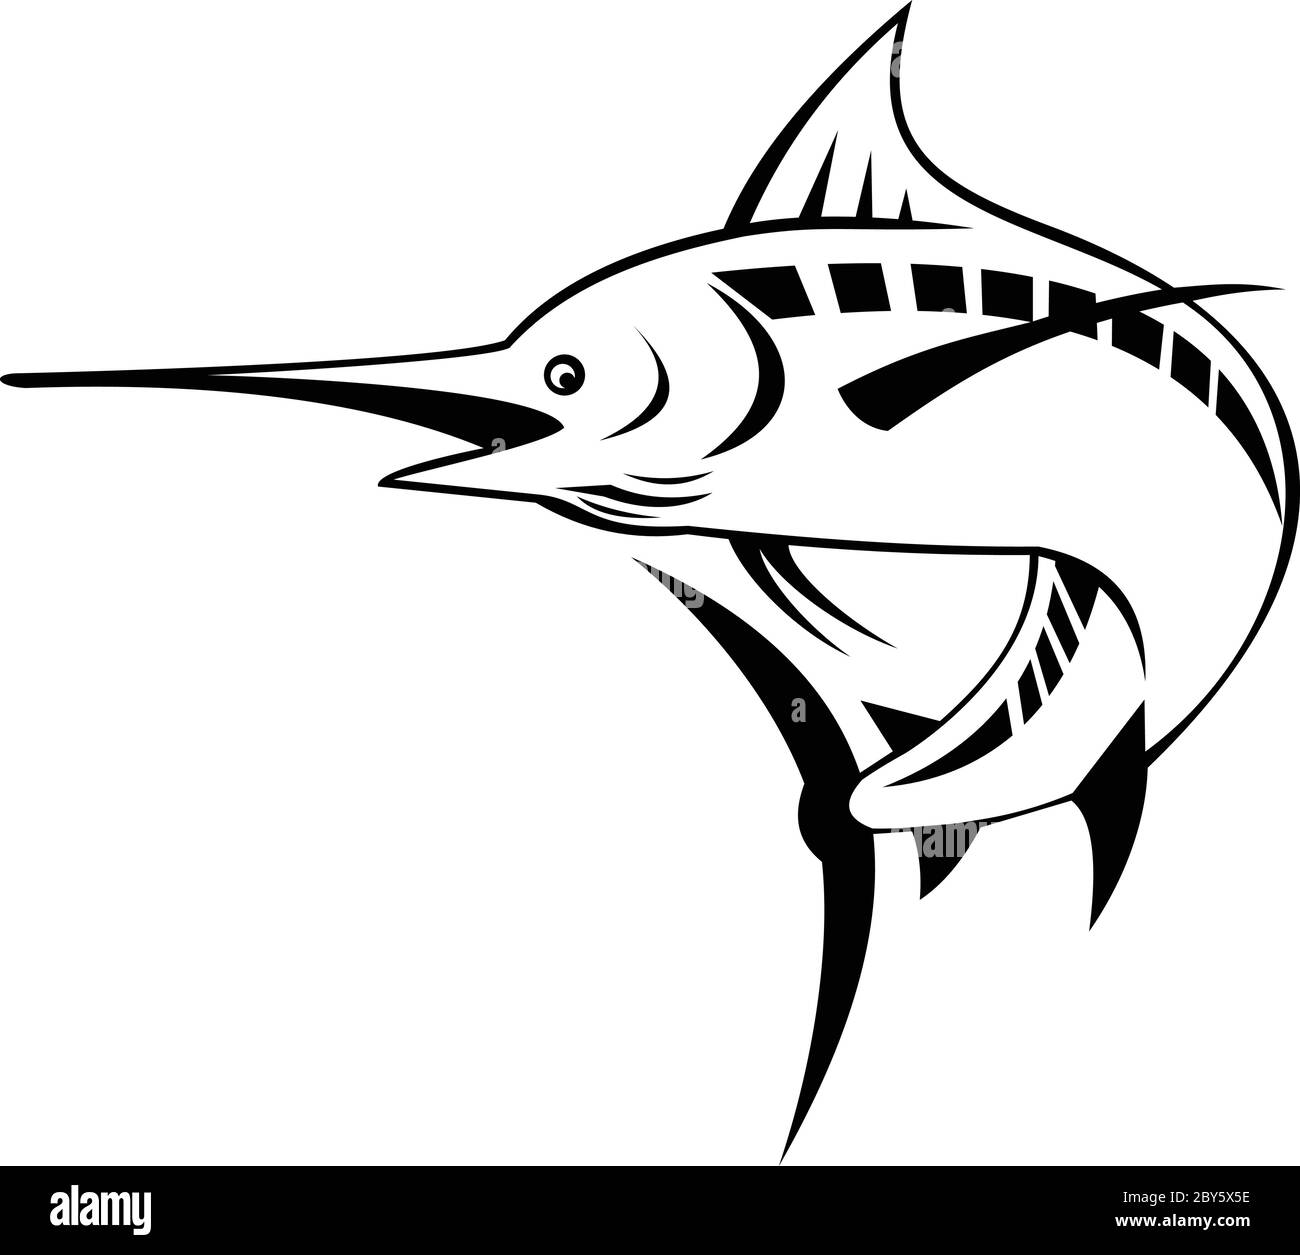 Ilustración de estilo retro de una aguja azul del Atlántico, una especie de aguja endémica del Océano Atlántico, nadando y saltando en negro y en blanco Ilustración del Vector